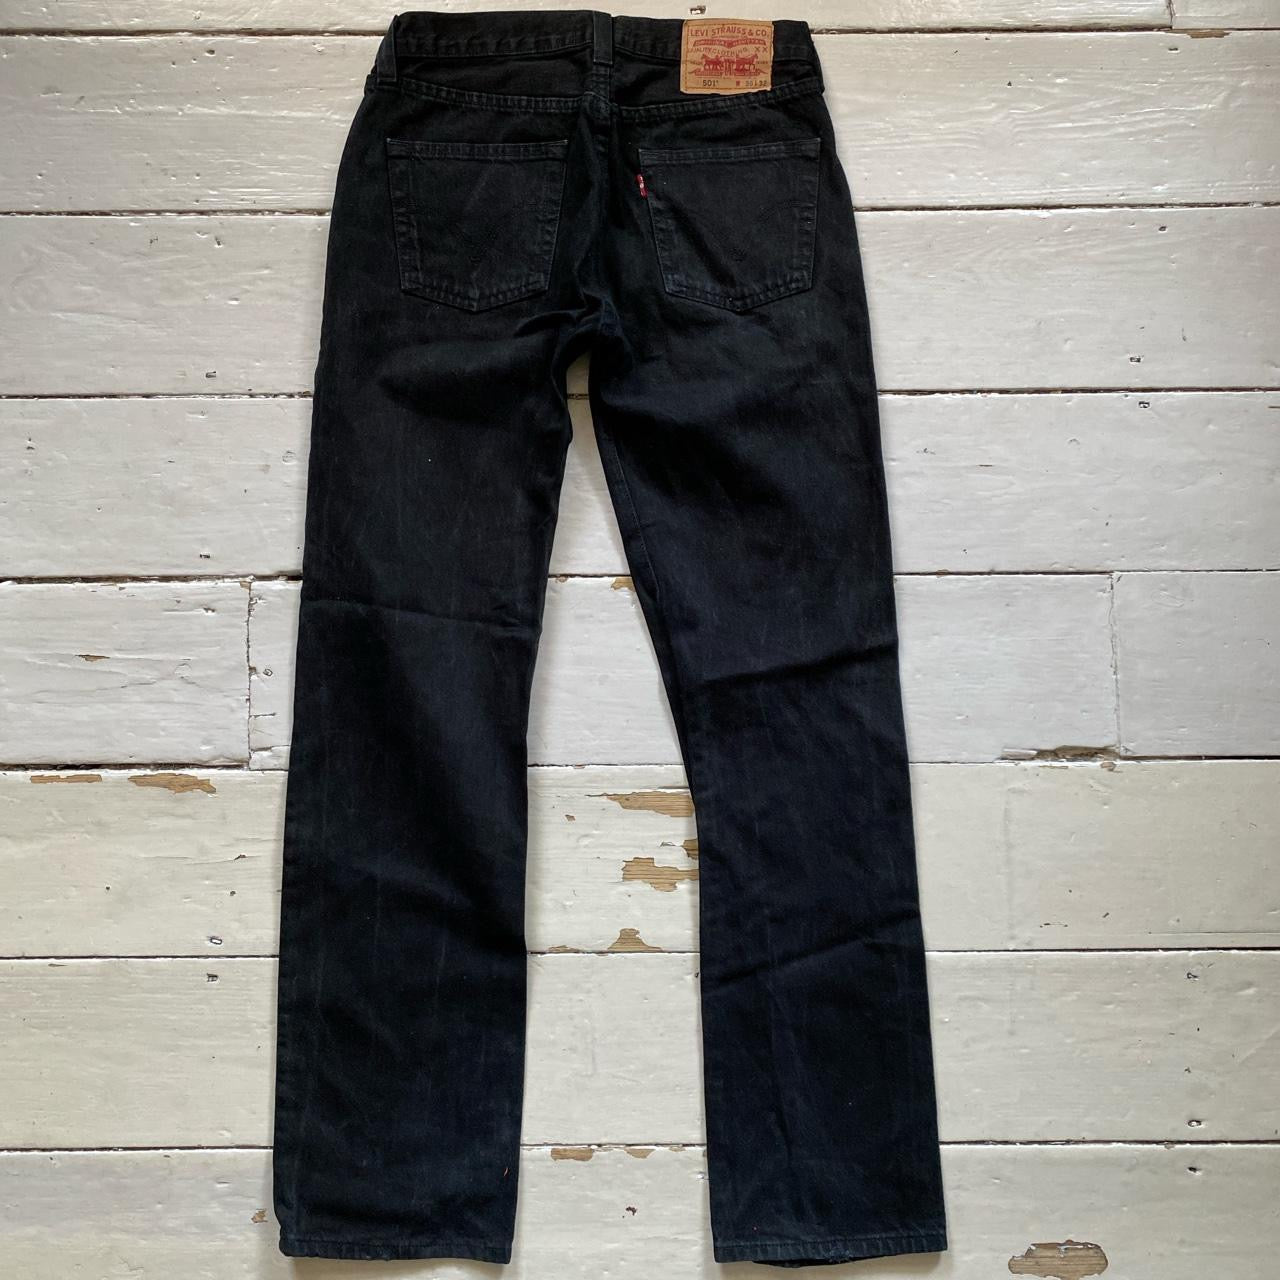 Levis 501 Black Jeans (30/32)